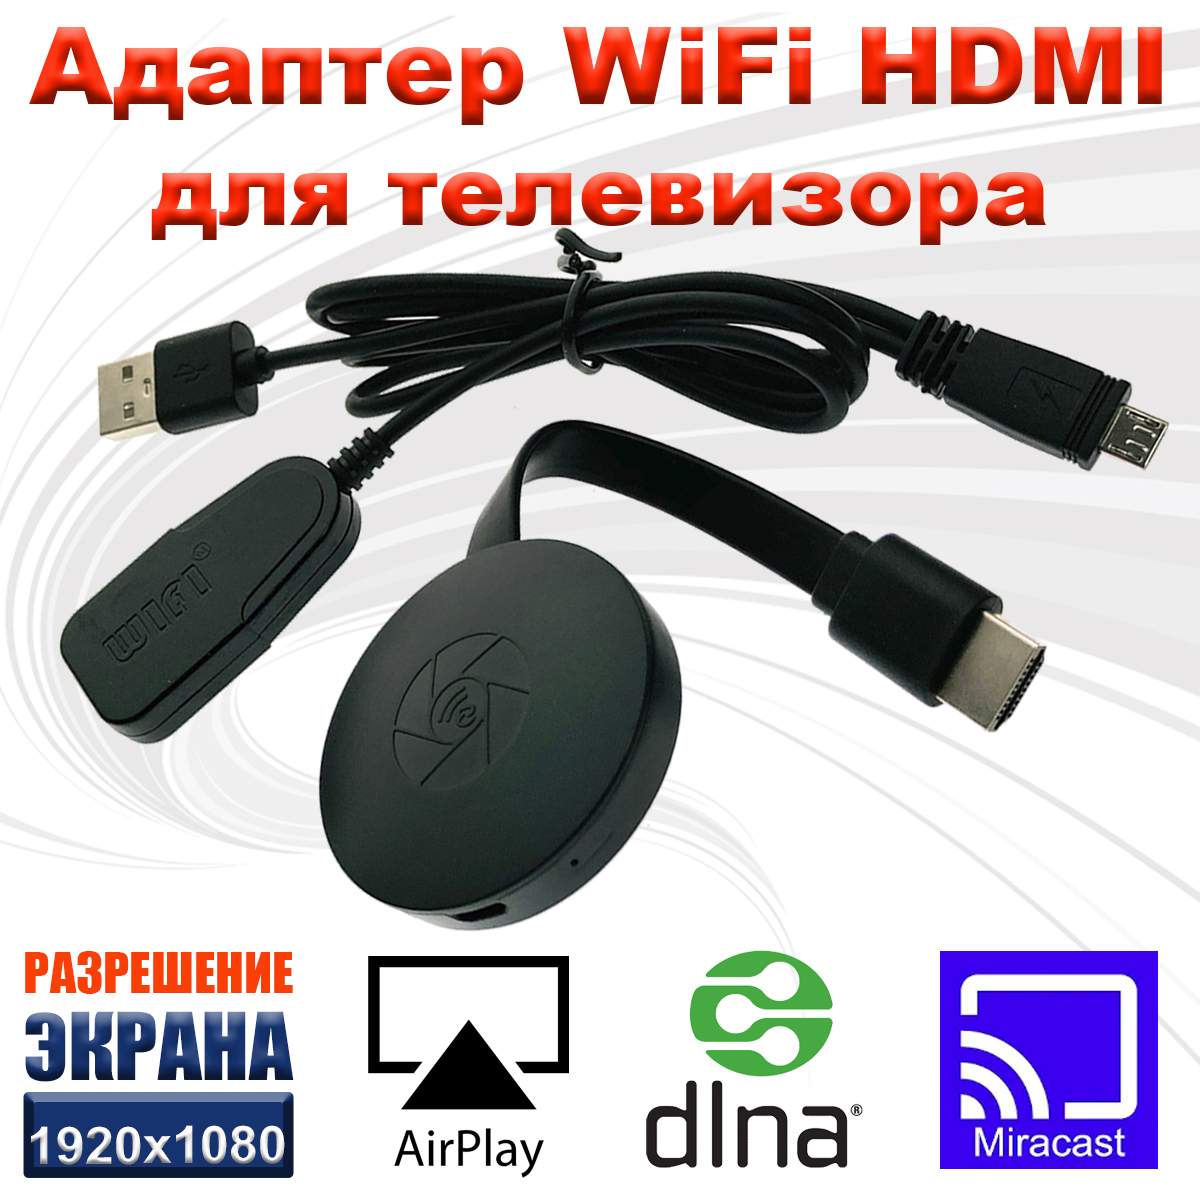 Адаптер WiFi HDMI WV04 Espada для телевизора, монитора, поддержка Android, iOS, купить в Москве, цены в интернет-магазинах на Мегамаркет